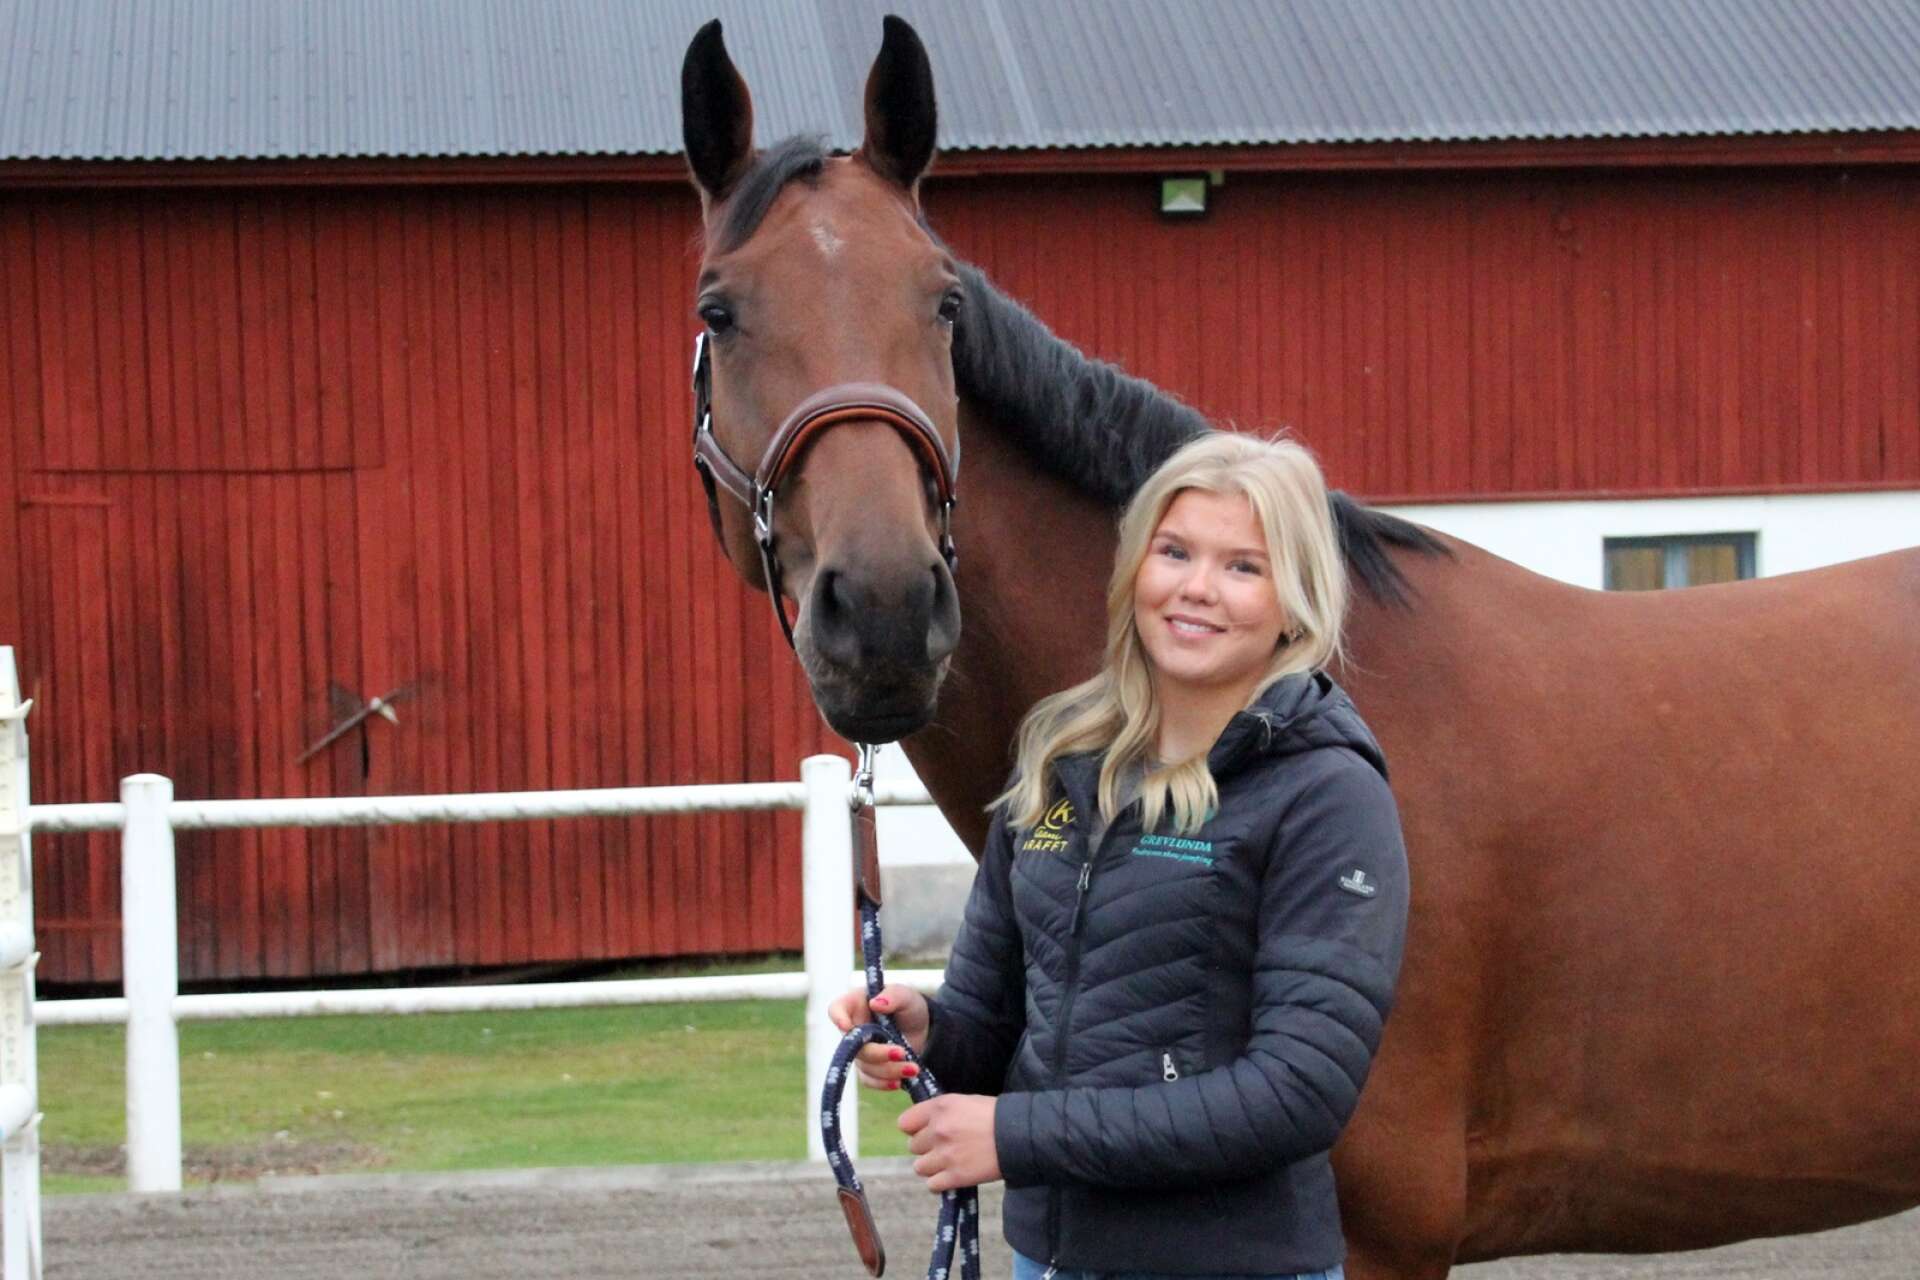 15-åriga Millie Johansson tillsammans med 8-åriga stoet Nova under ett besök tillbaka hemma på gården i Klässbol en ledig helg.